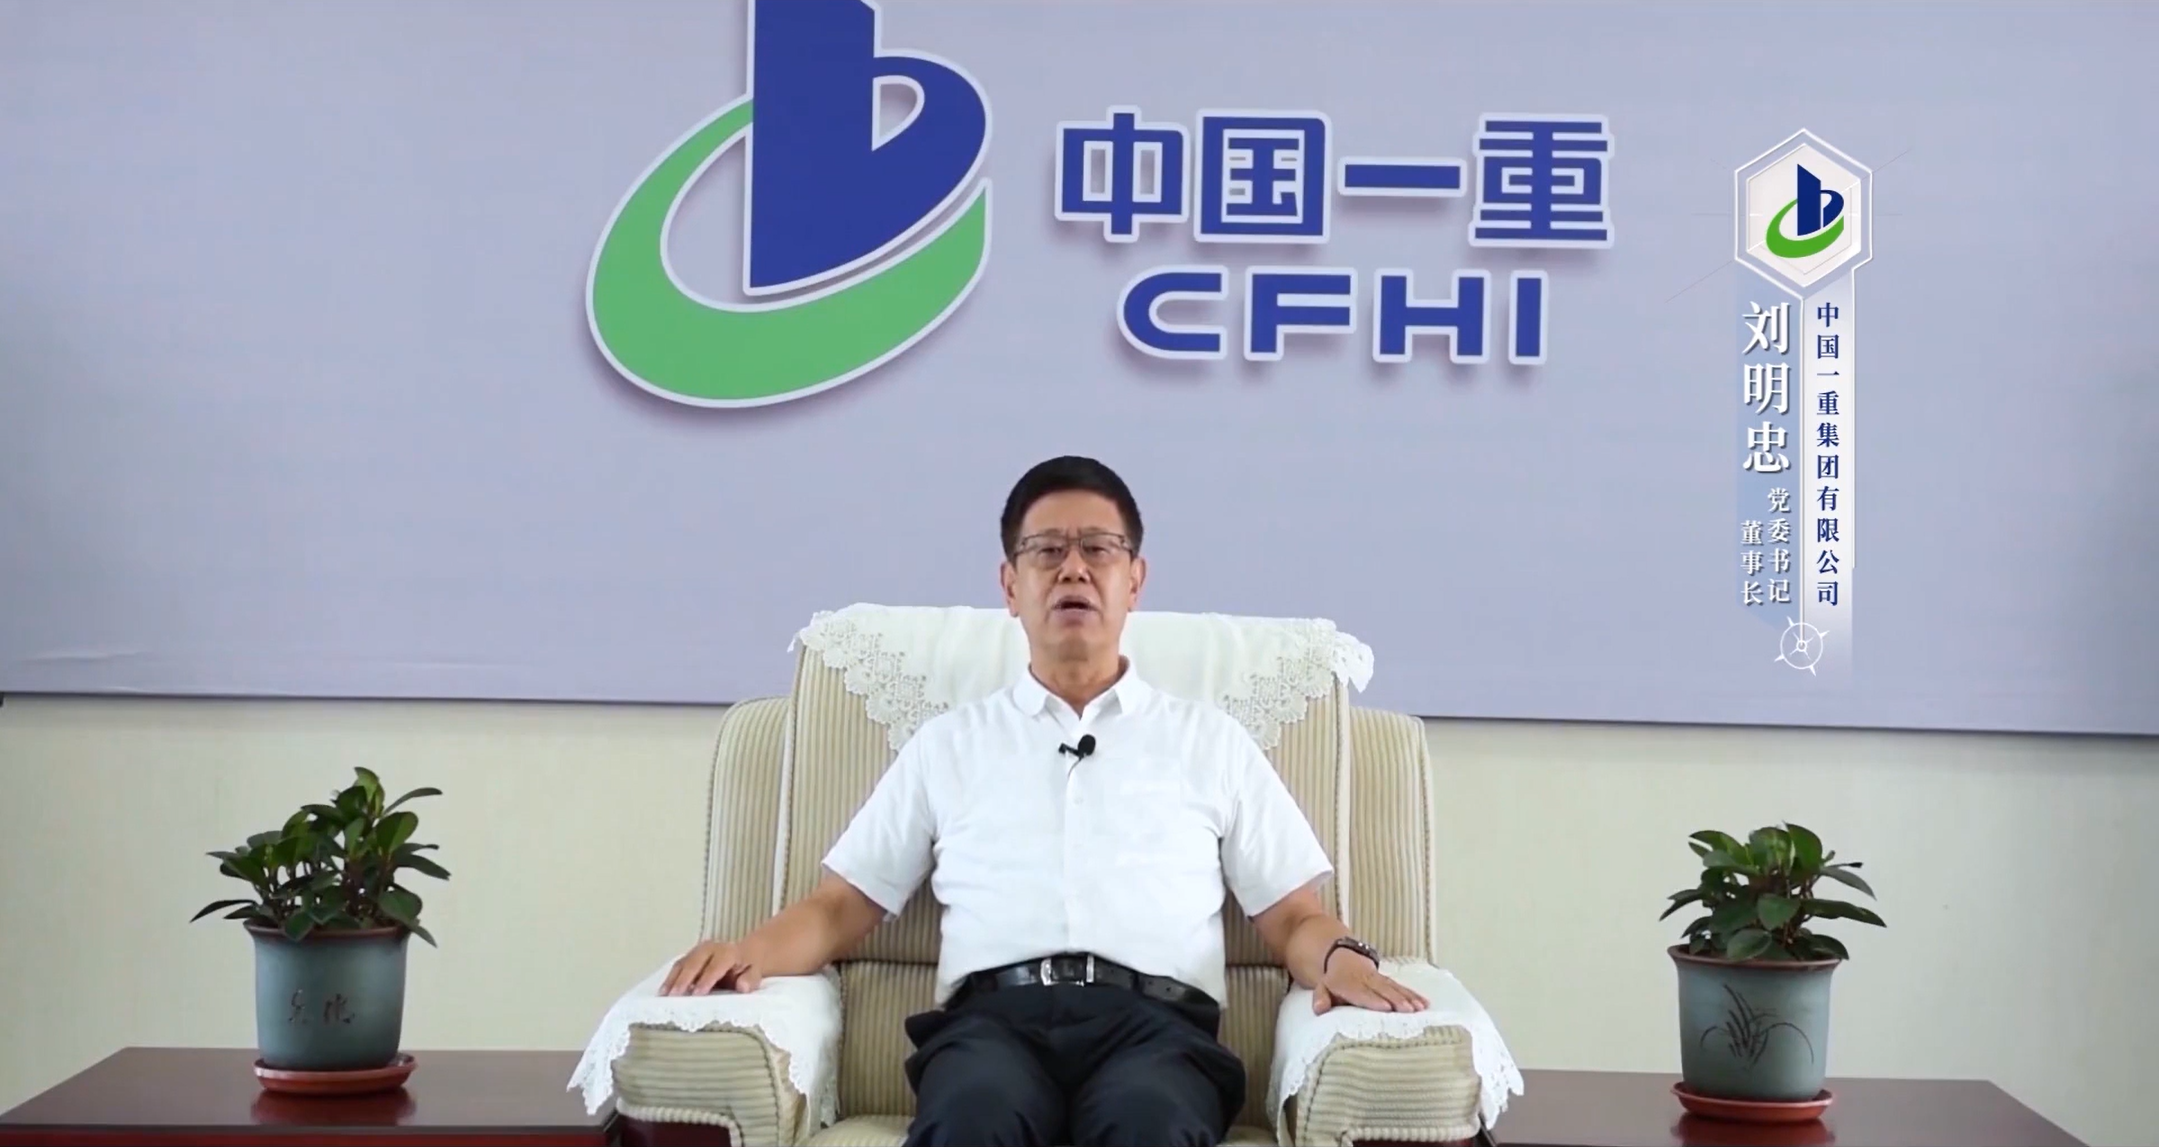 刘明忠 中国一重集团有限公司党委书记、董事长